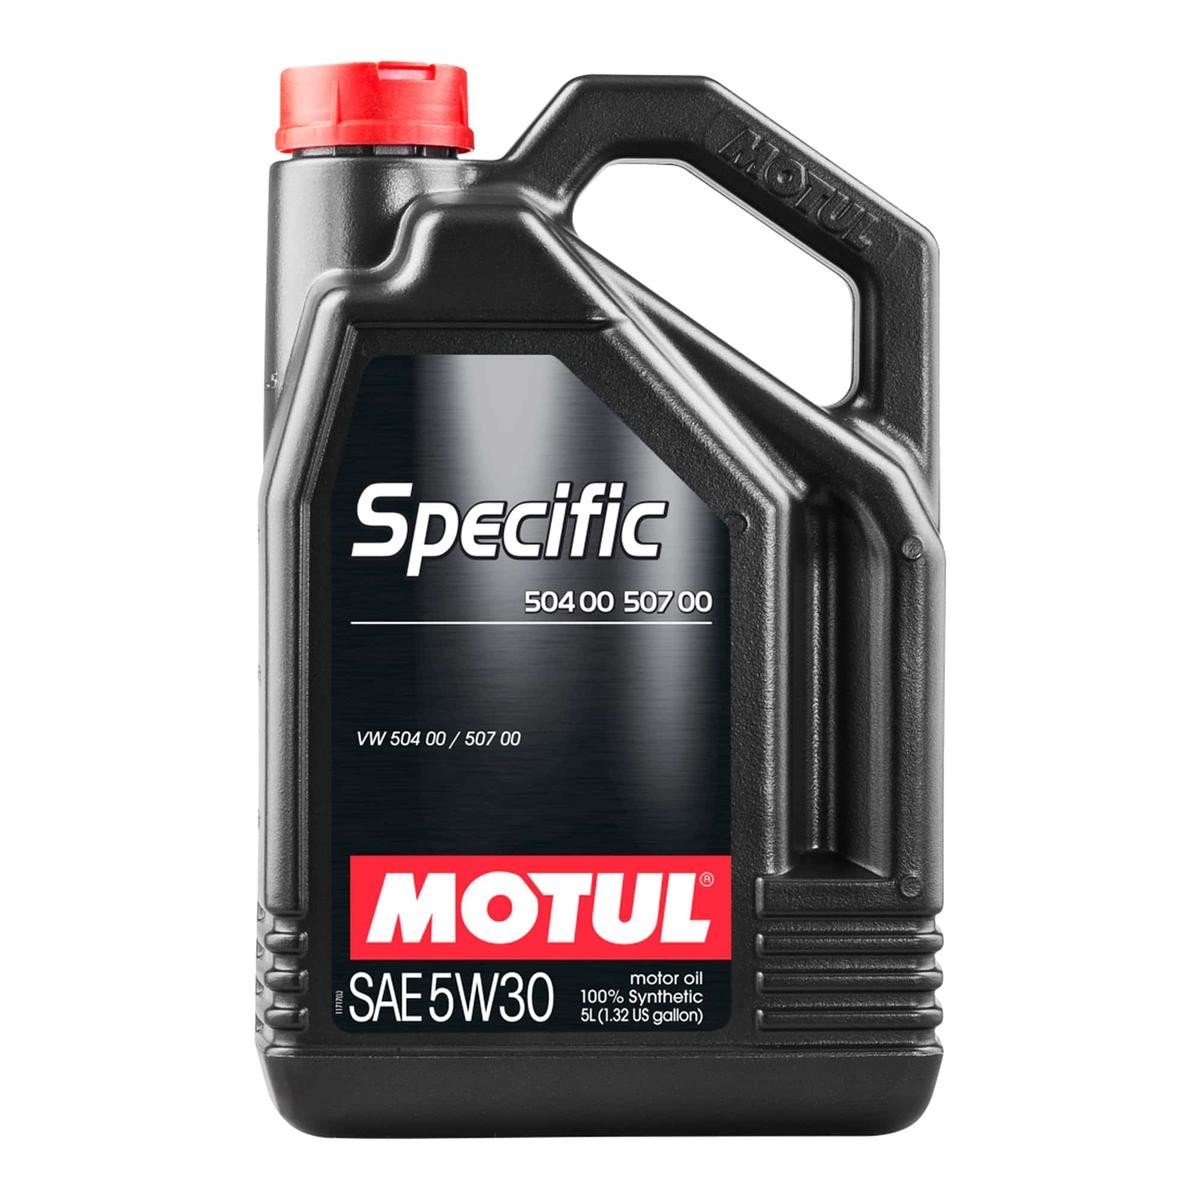 Buy Motor oil MOTUL petrol 106375 SPECIFIC, 504 00 507 00 5W-30, 5l